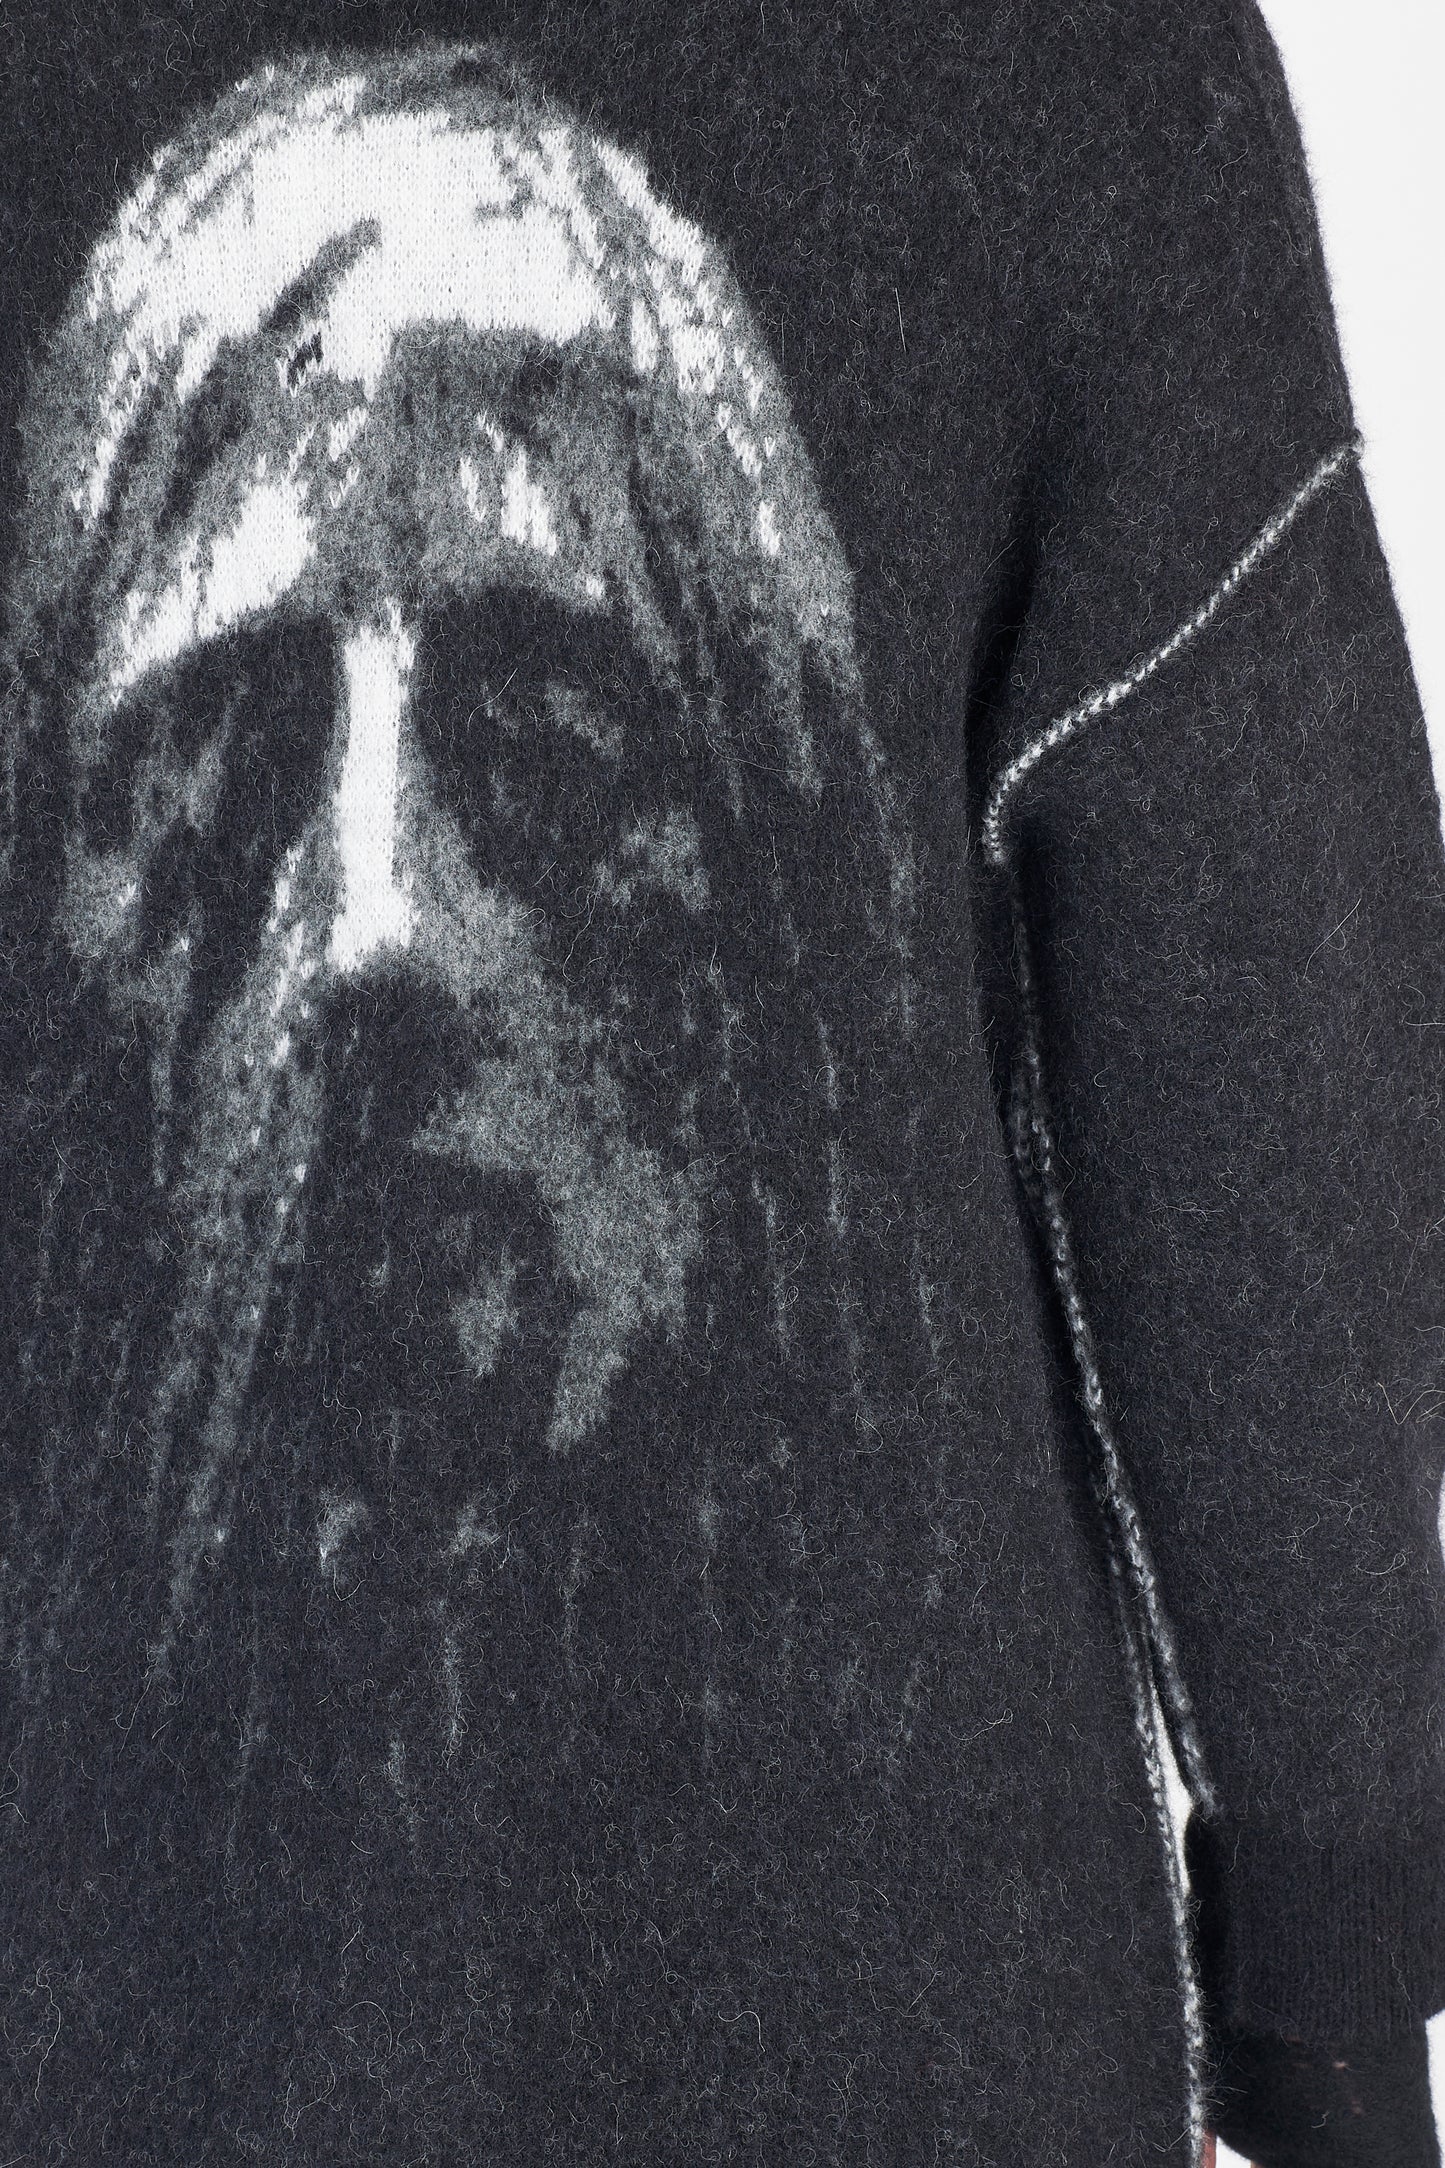 Black Face Print Alpaca Wool Knit Long Cardigan